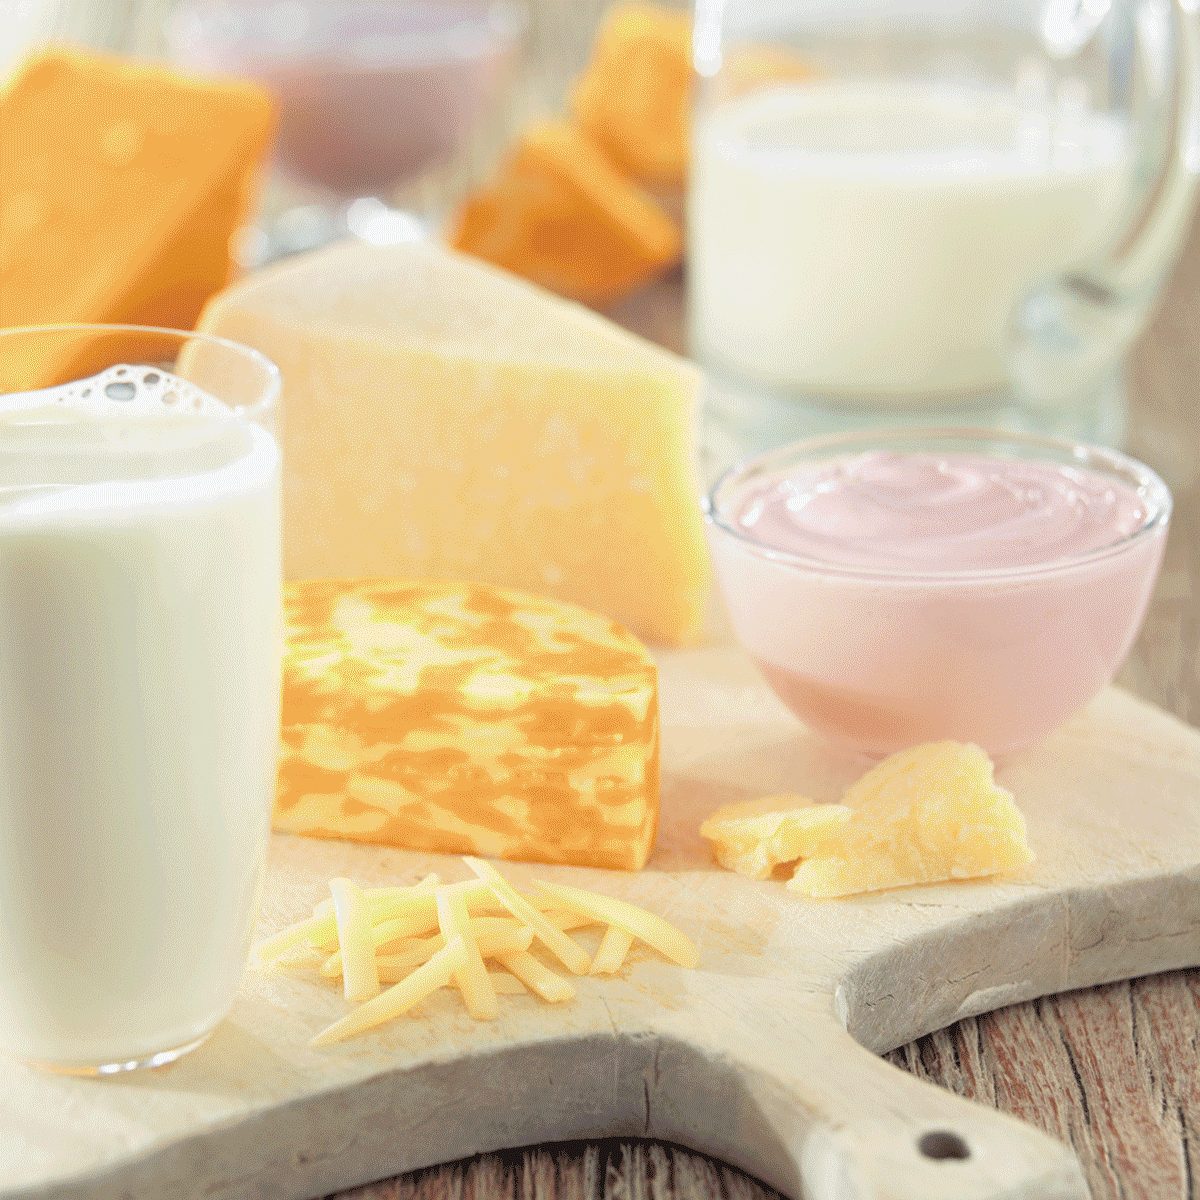 dairy foods - yogurt, milk and cheese